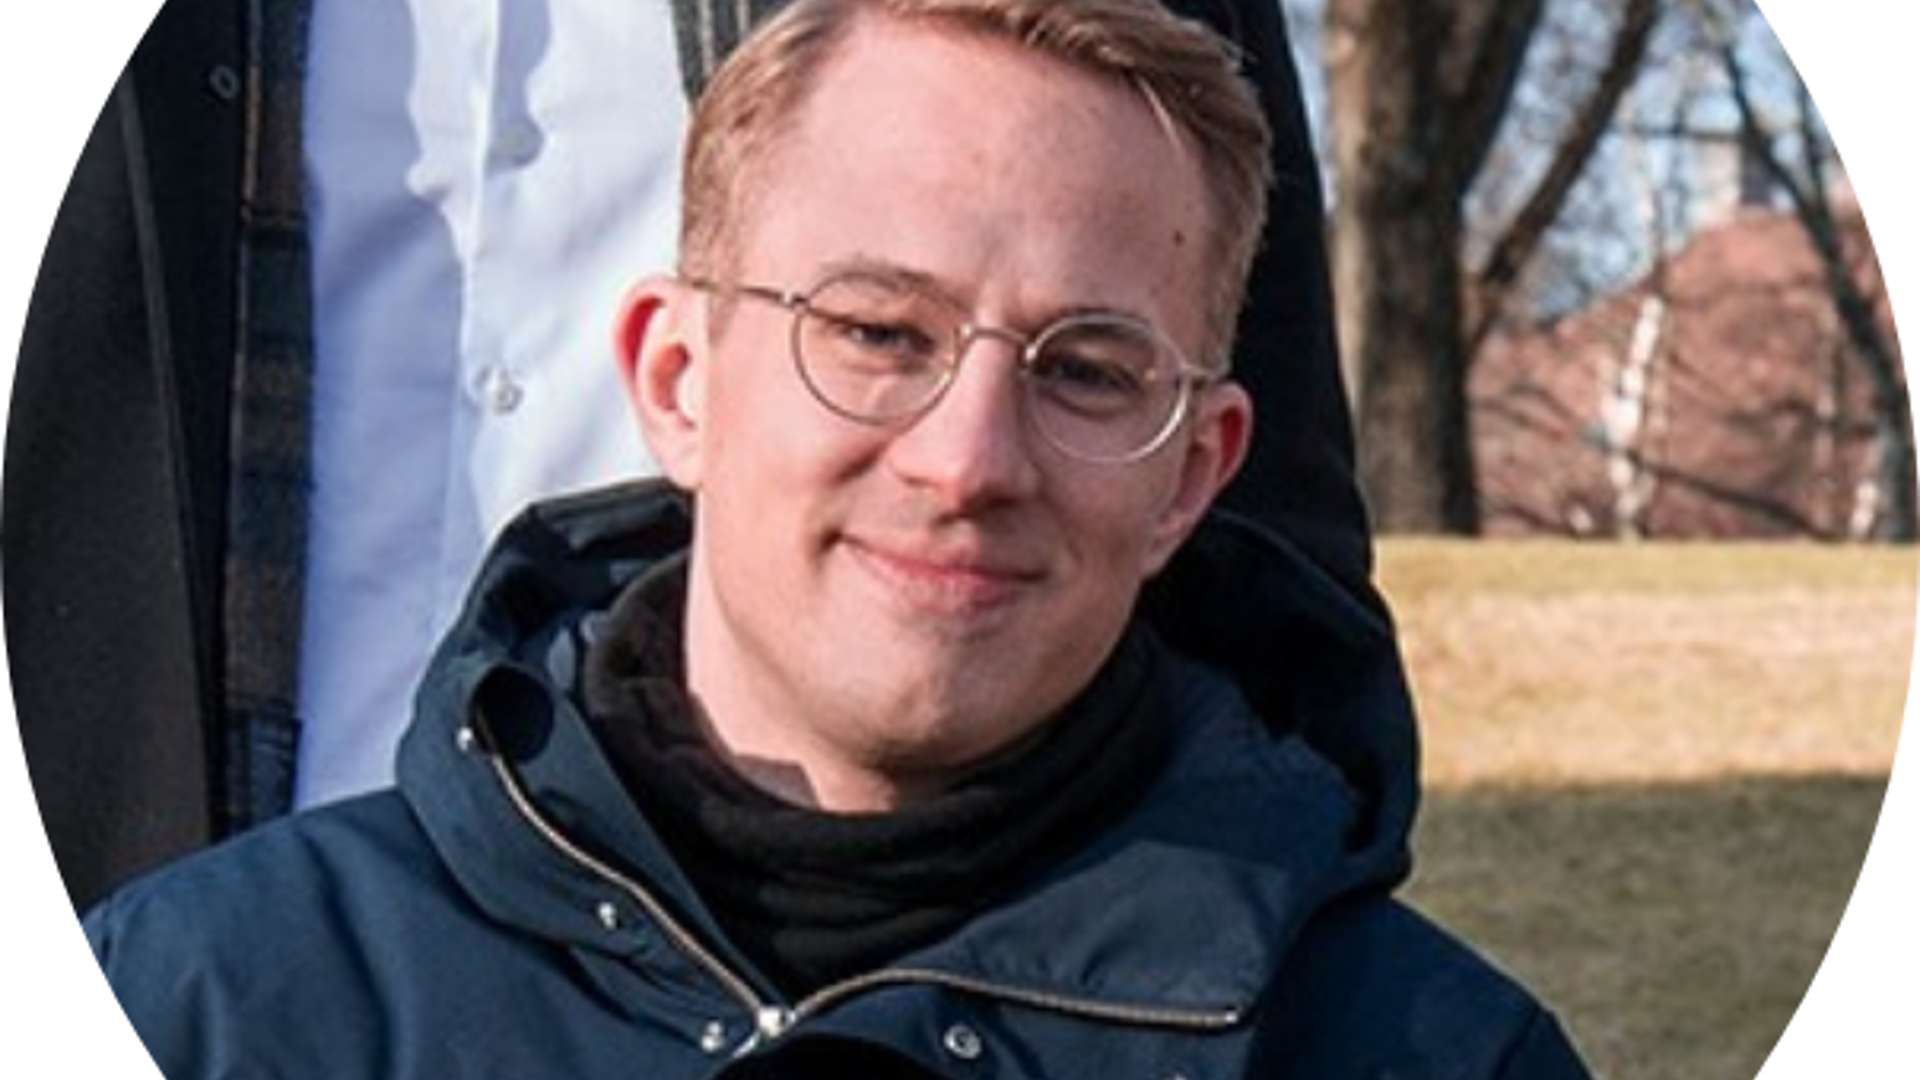 Markus Skoglund